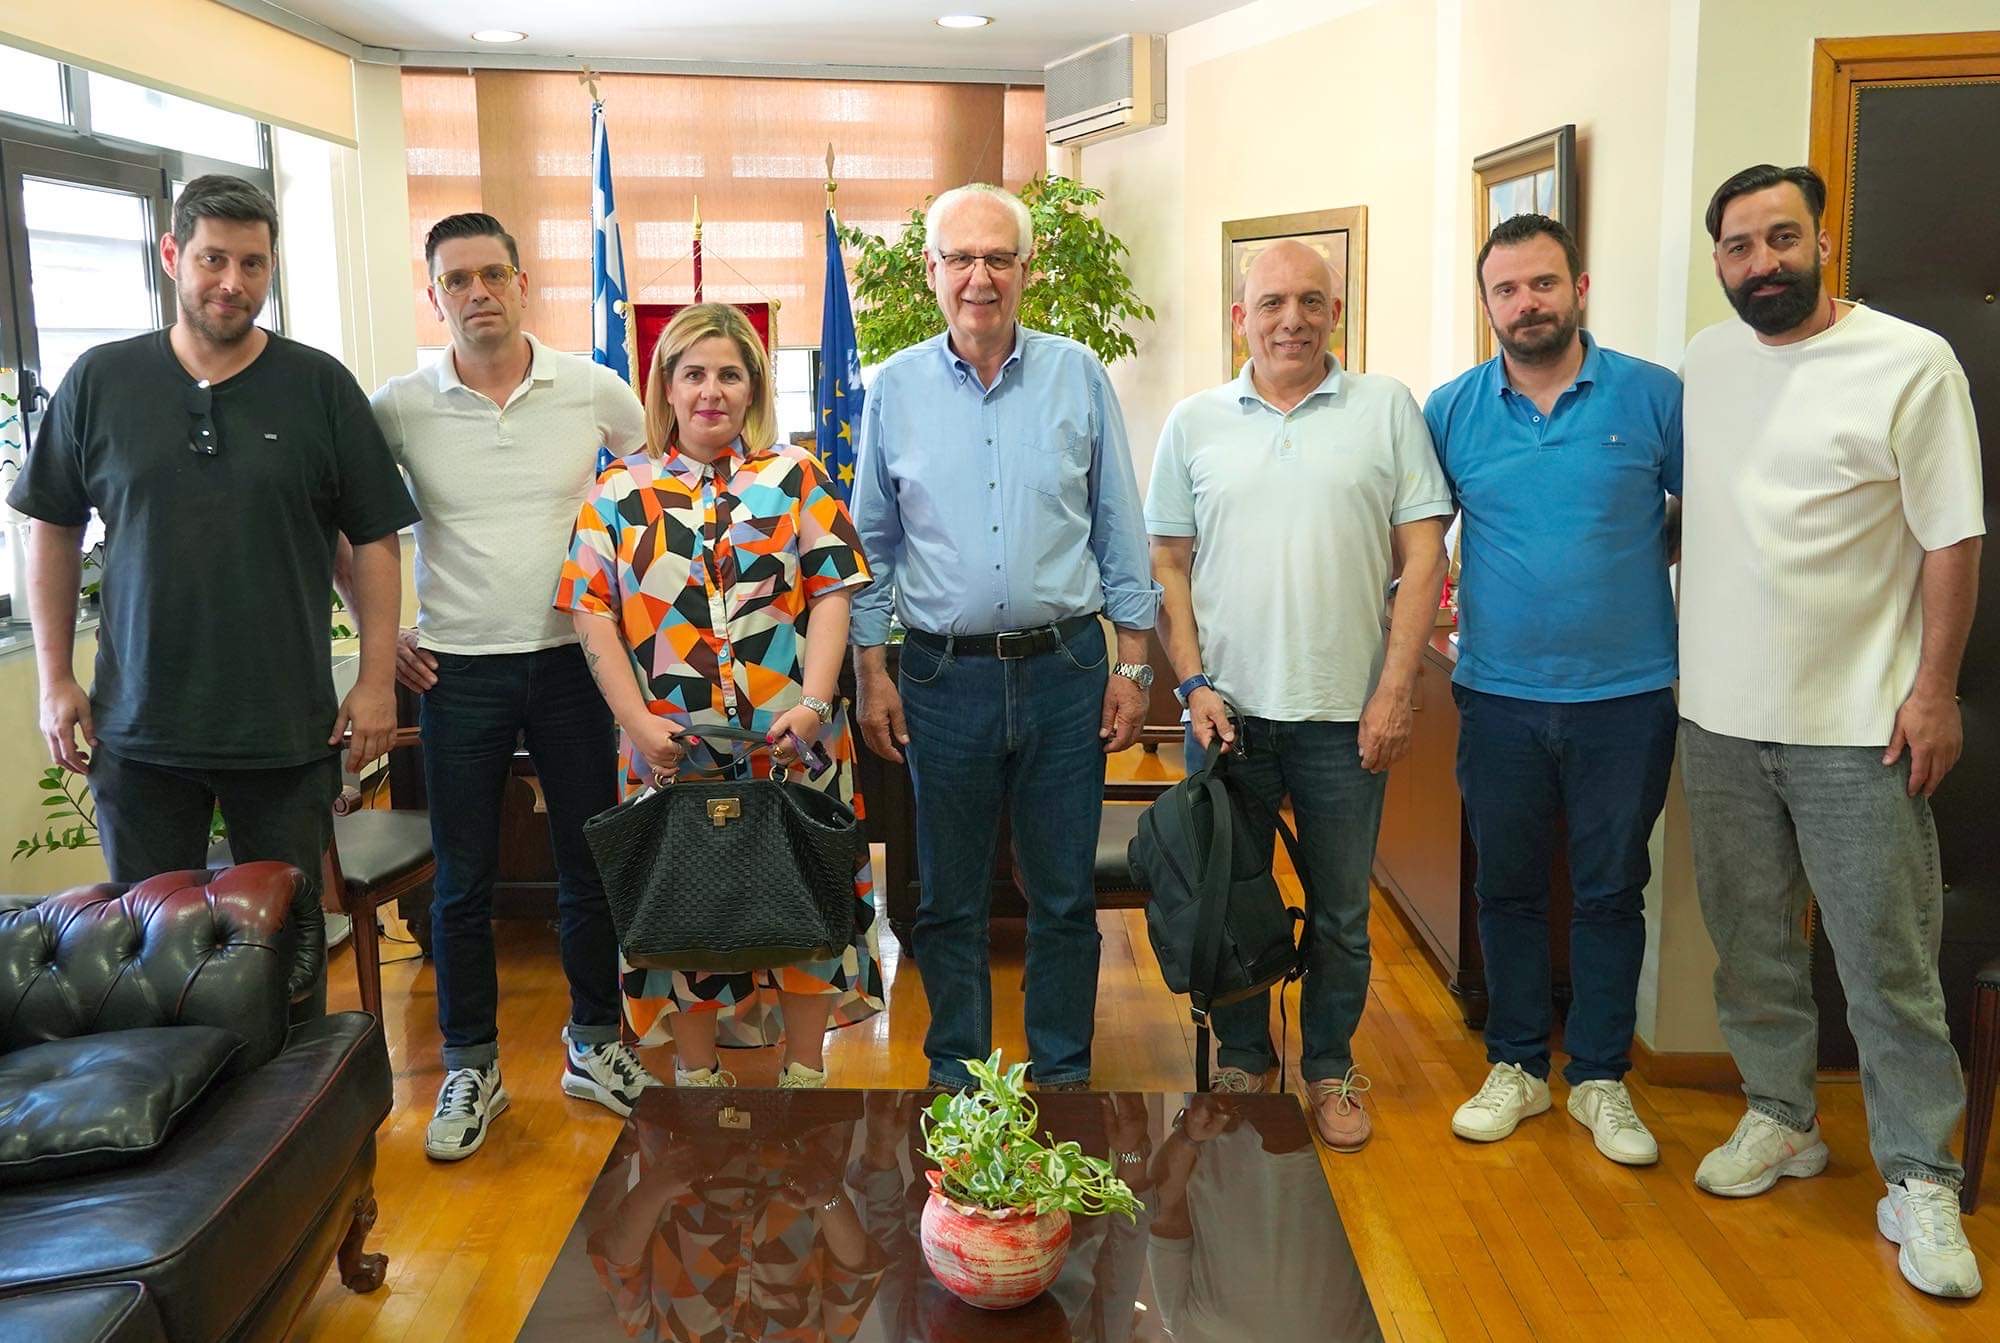 Με τον δήμαρχο Λαρισαίων συναντήθηκαν τα μέλη του νέου ΔΣ του ΣΙΚΑΕΛ